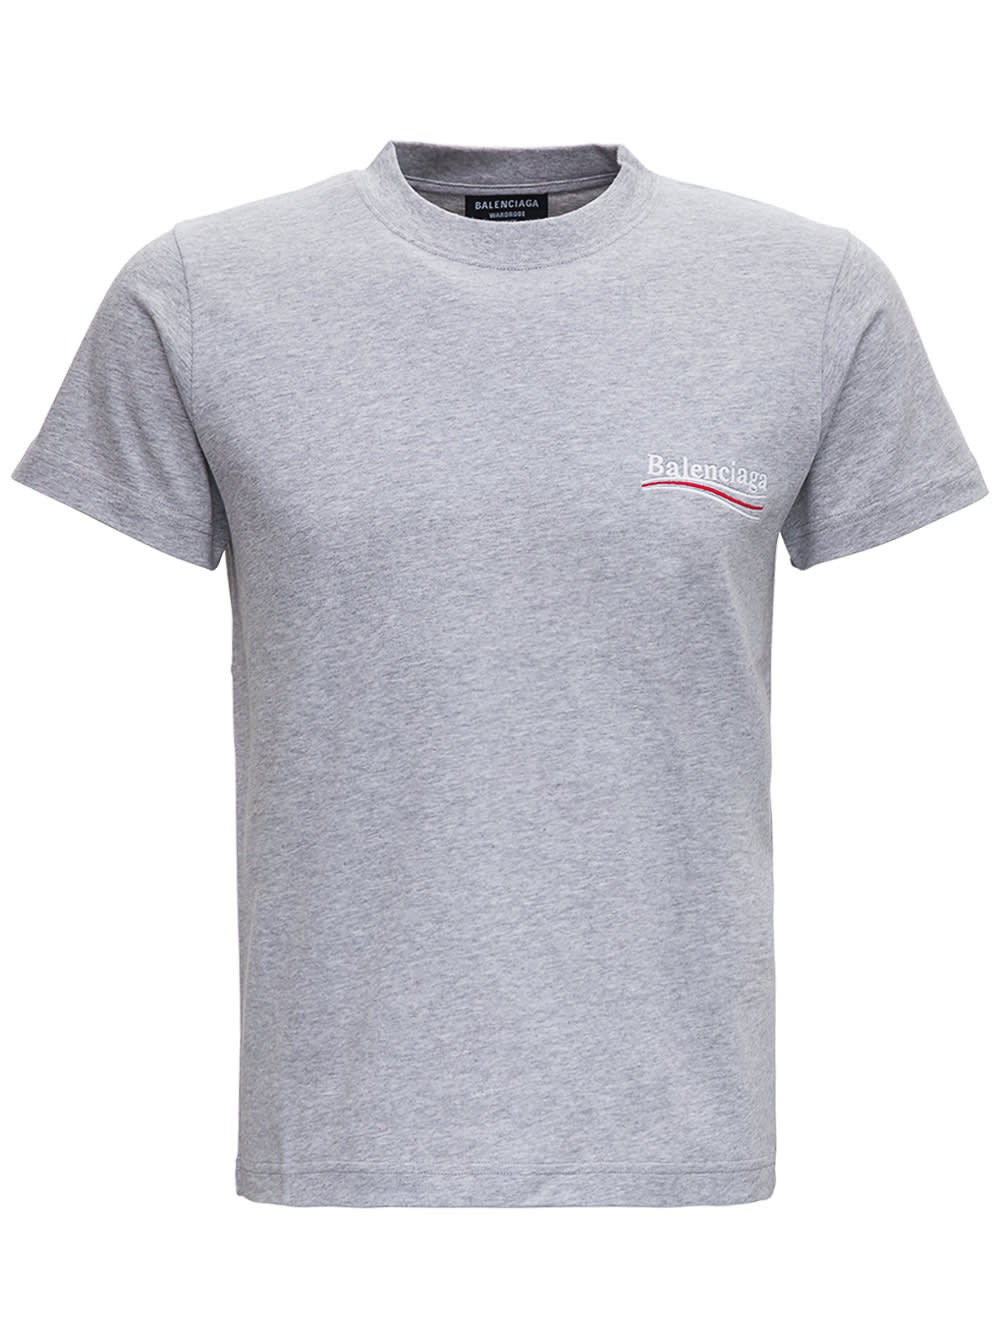 Balenciaga Grey Cotton T-shirt With Logo Print